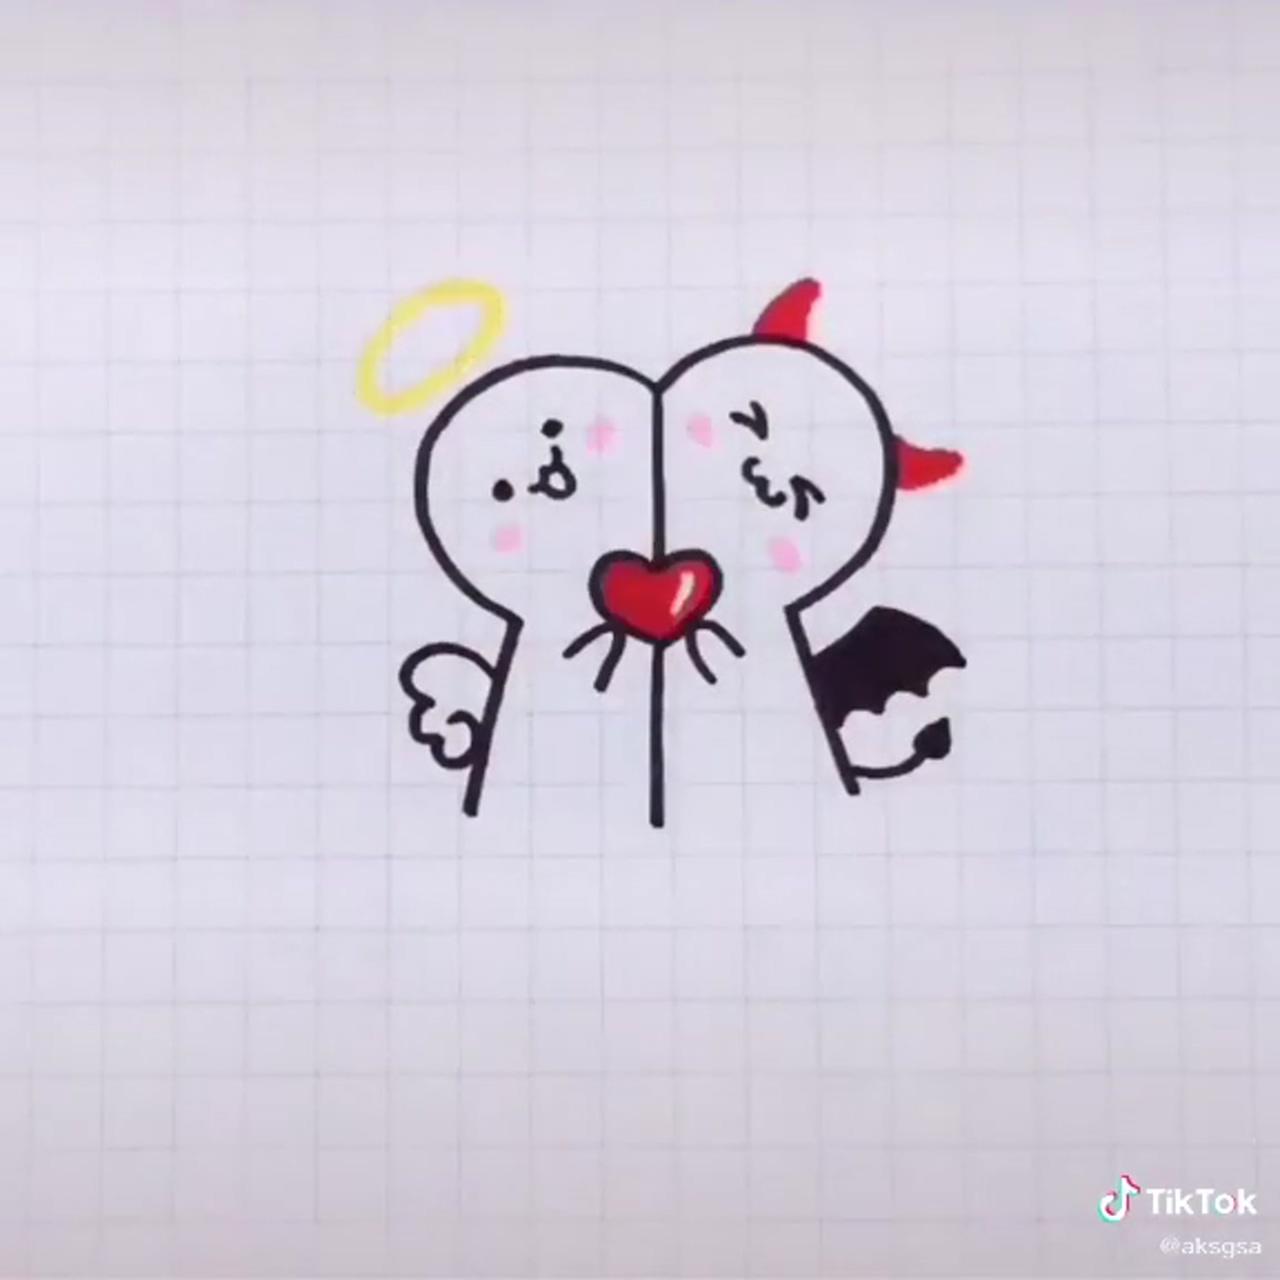 Easy love drawings; cute doodles drawings